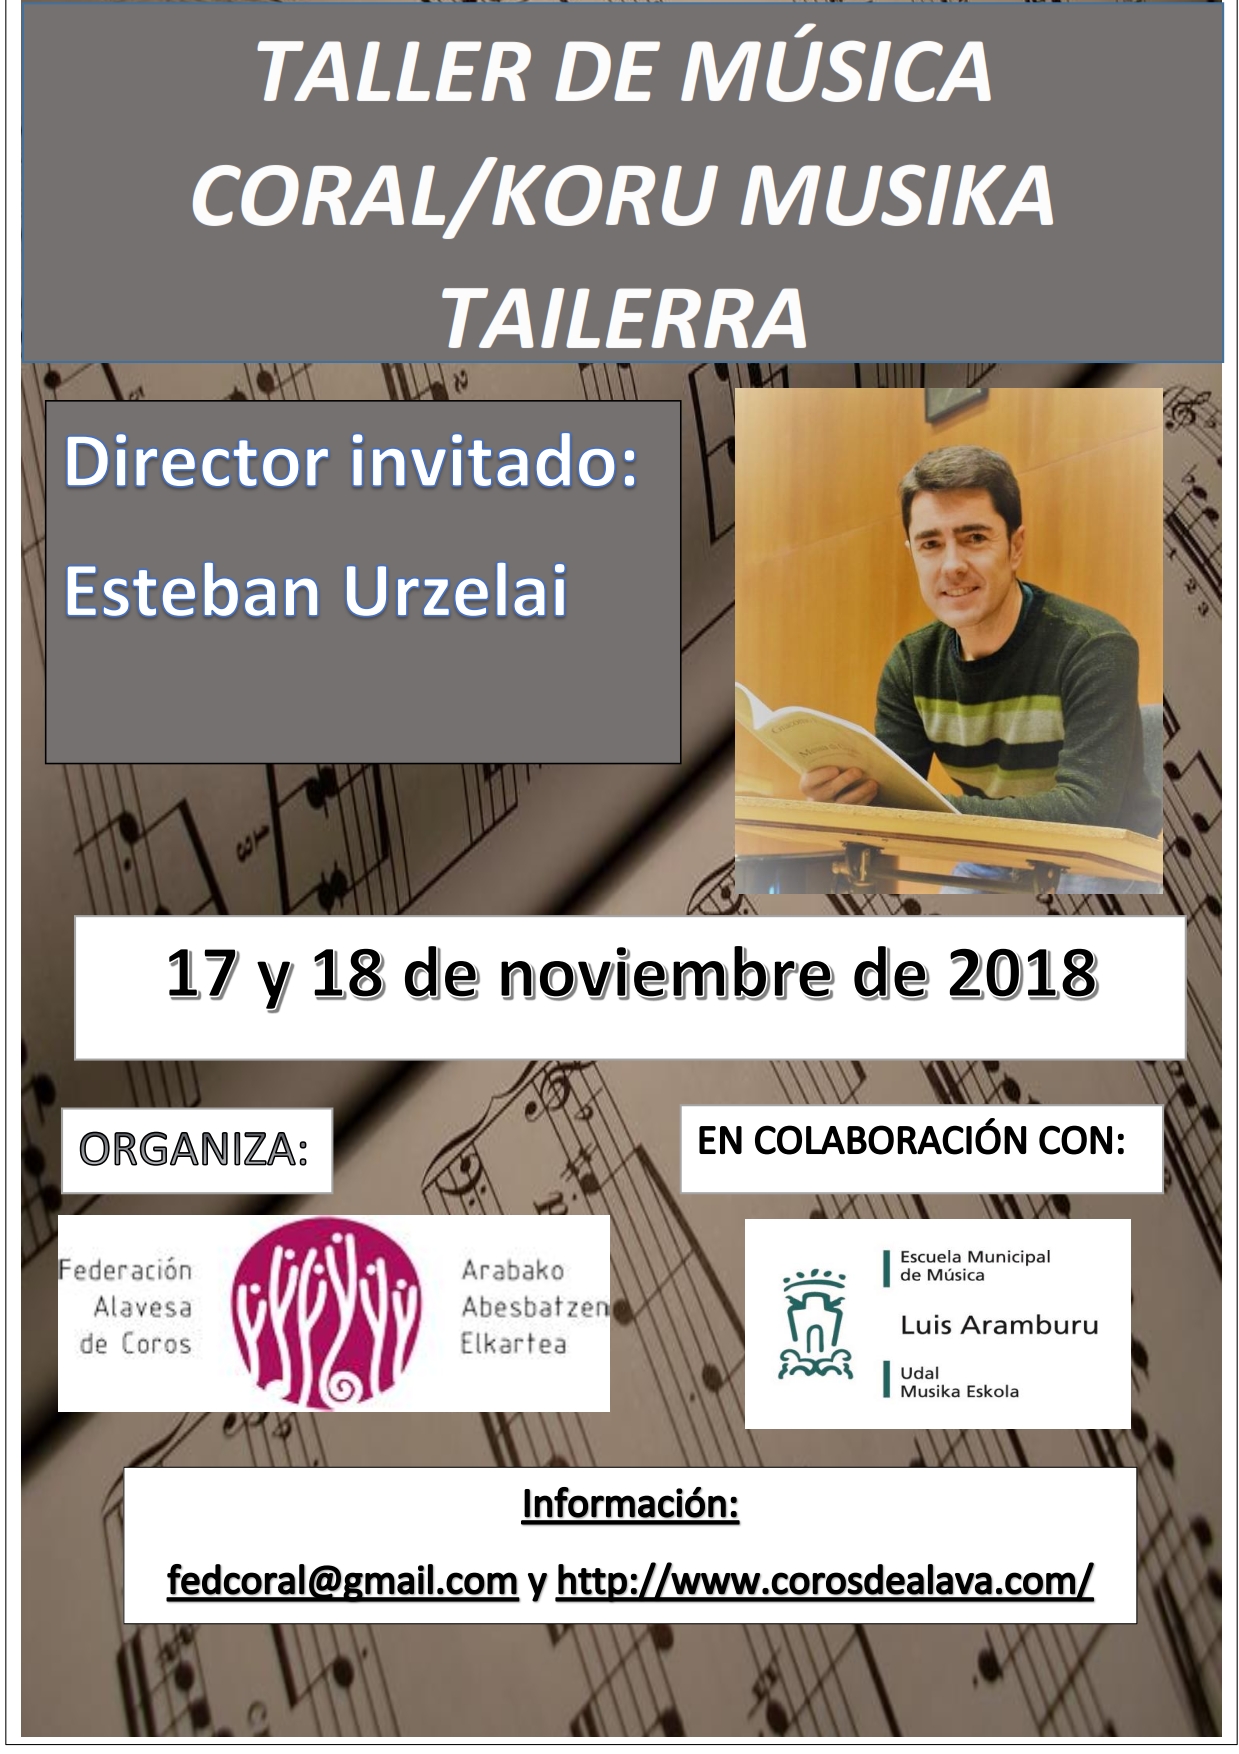 Taller de música coral organizado por la Federación Alavesa de Coros, los días 17 y 18 de noviembre 2018